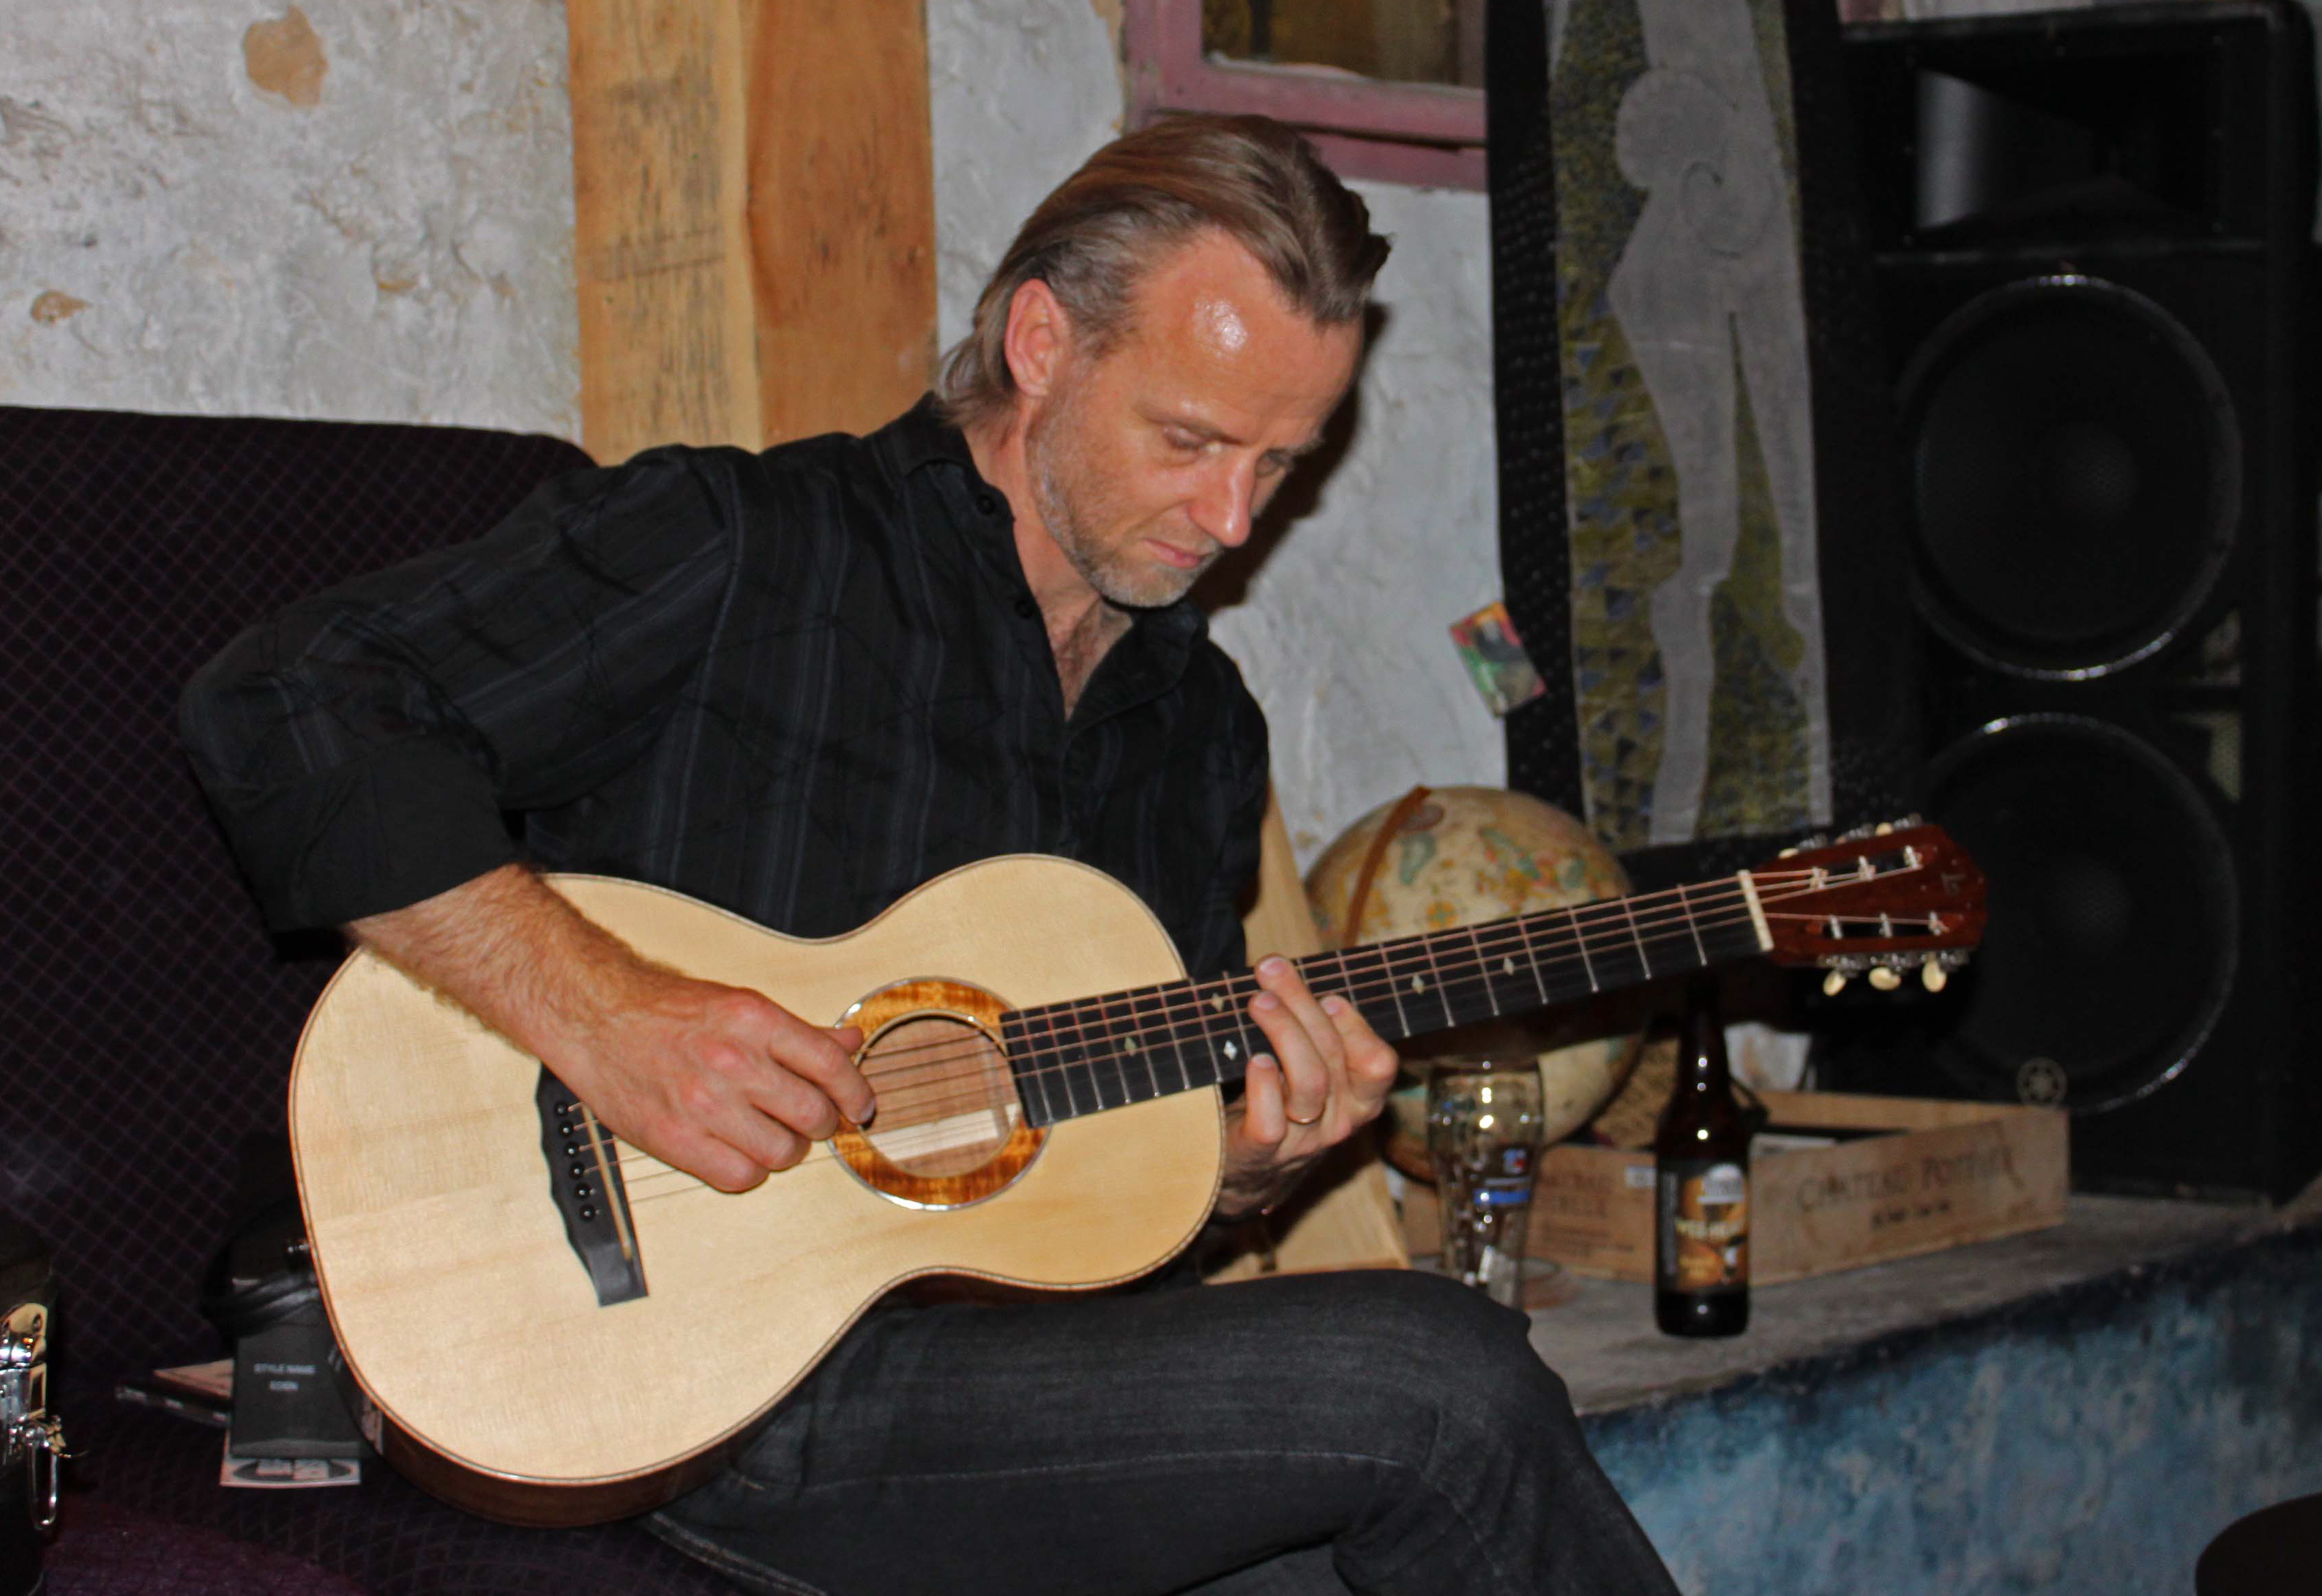 Geoff Achison test-driving a Lichty Koa Parlor Guitar